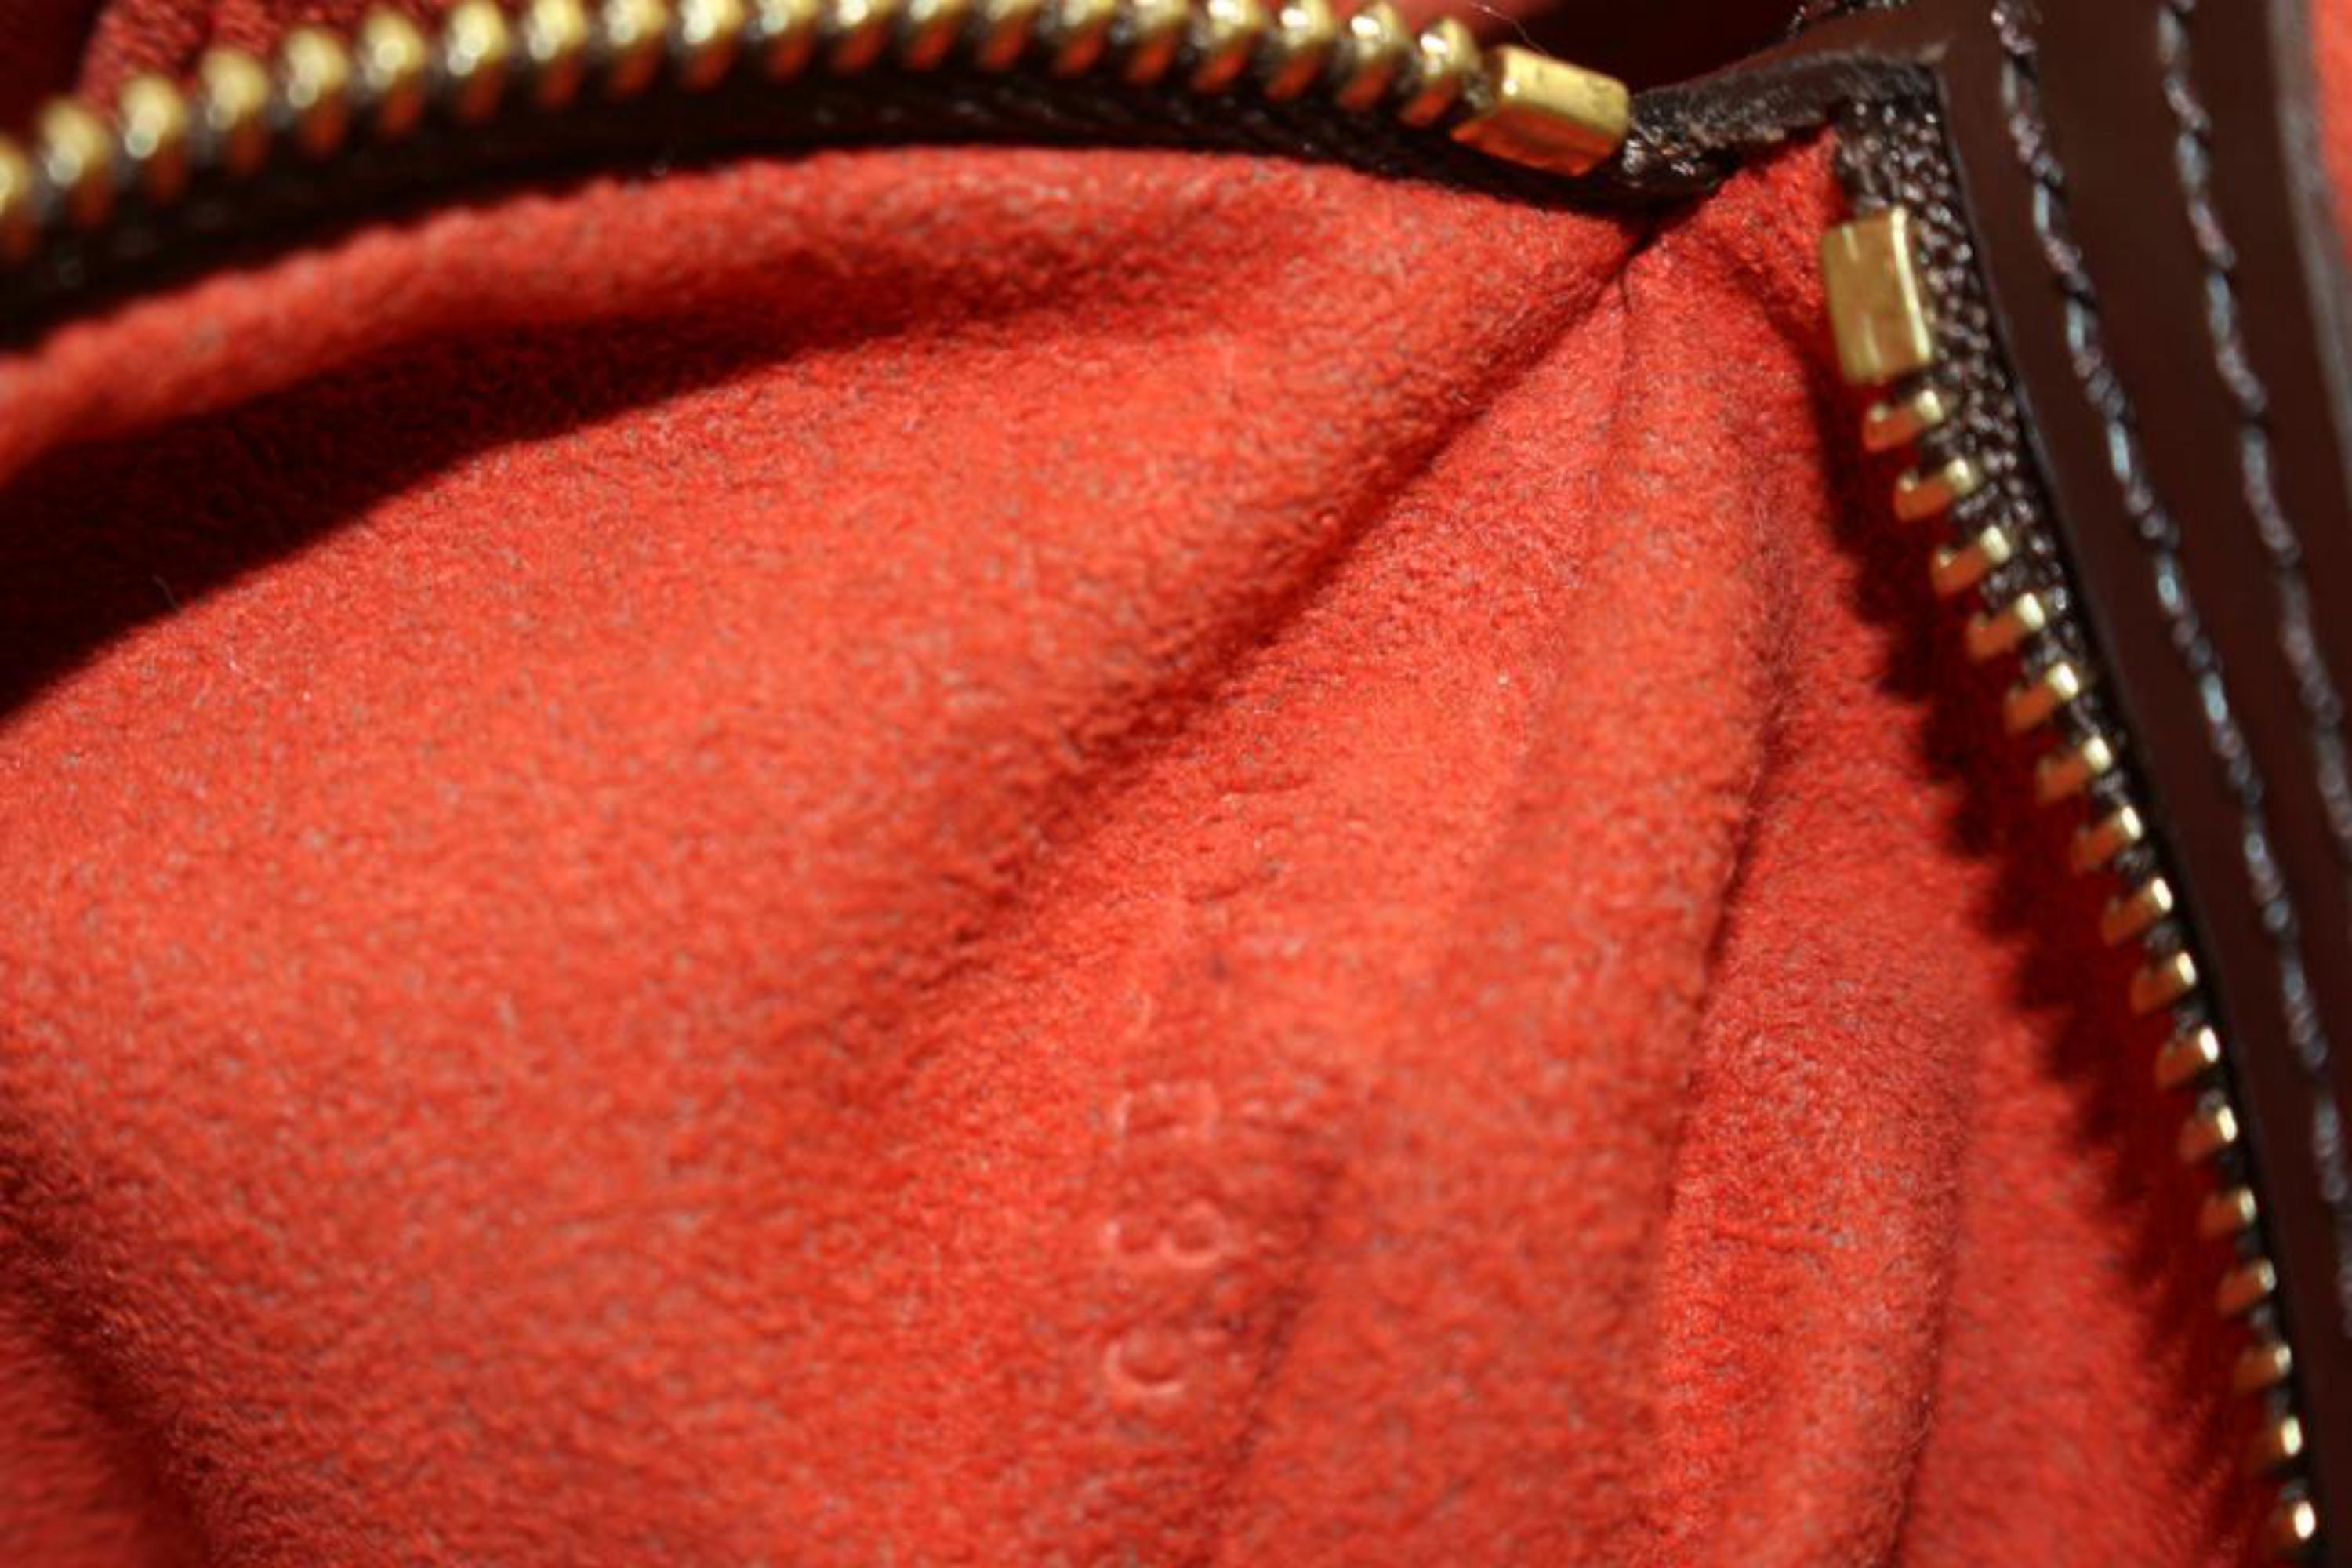 Gray Louis Vuitton Damier Ebene Uzes Tote Manhattan Style Tote 82lz817s